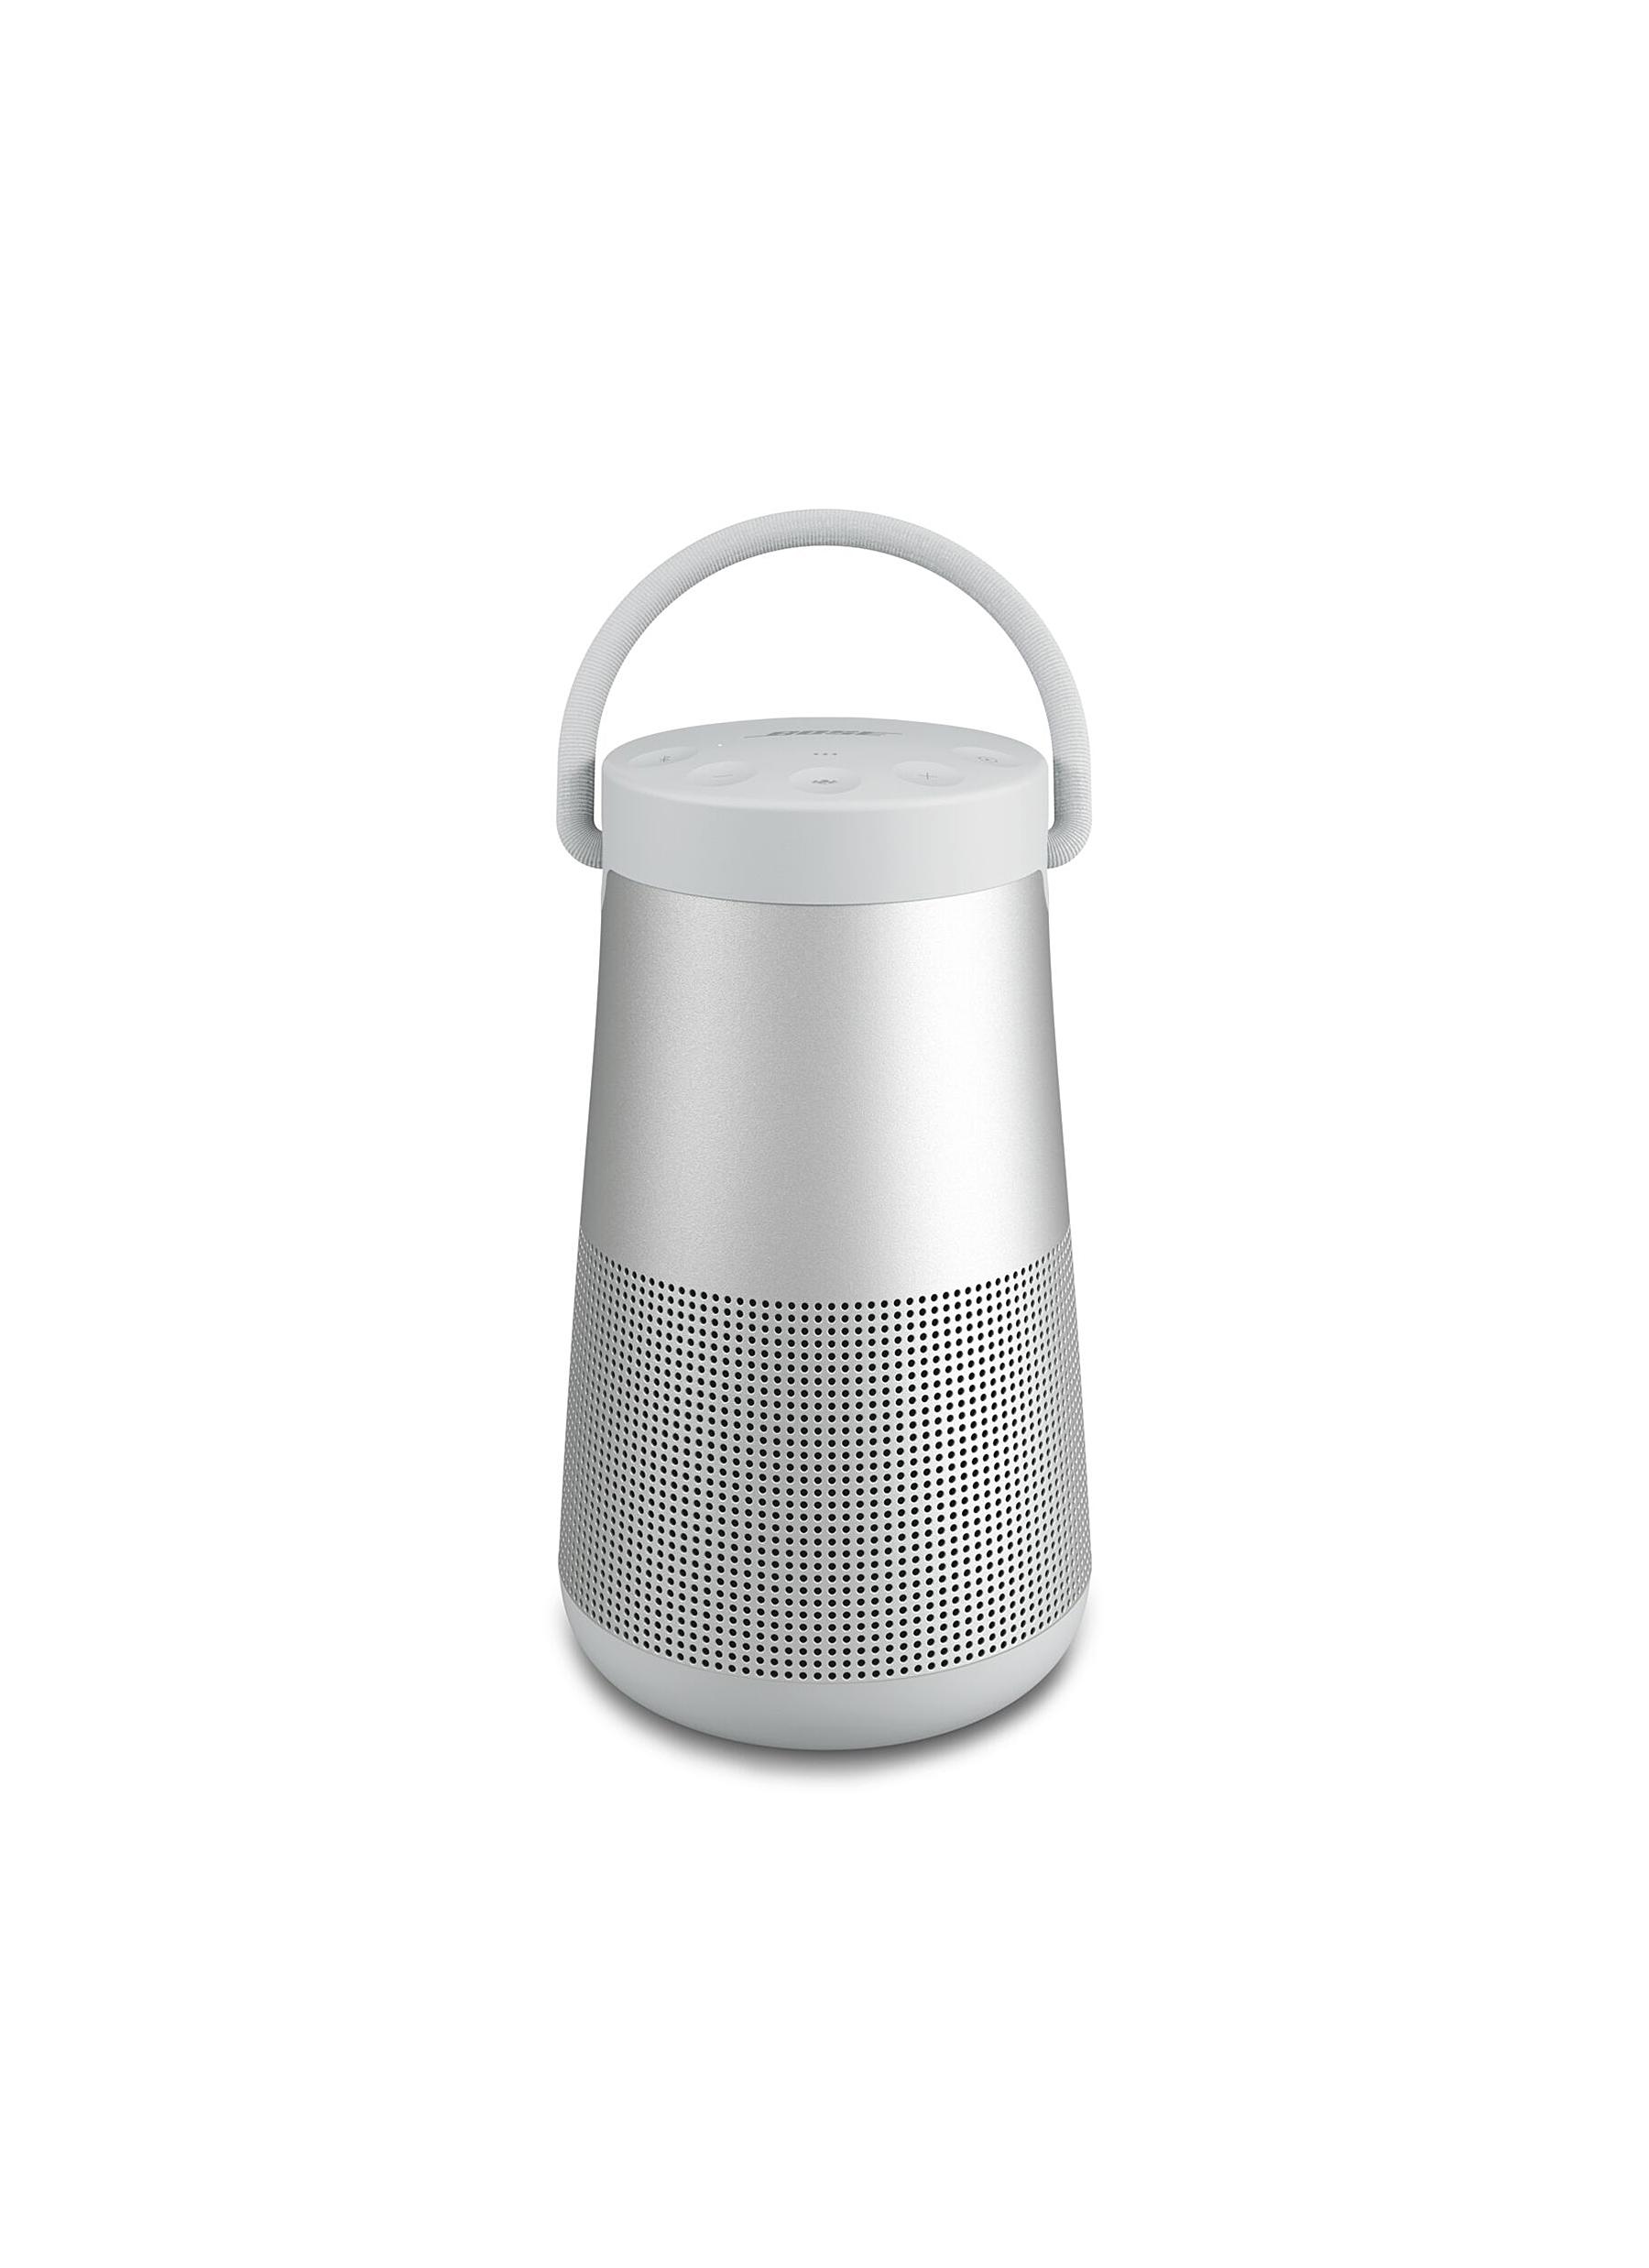 SoundLink Revolve+ II Wireless Speaker - Luxe Silver